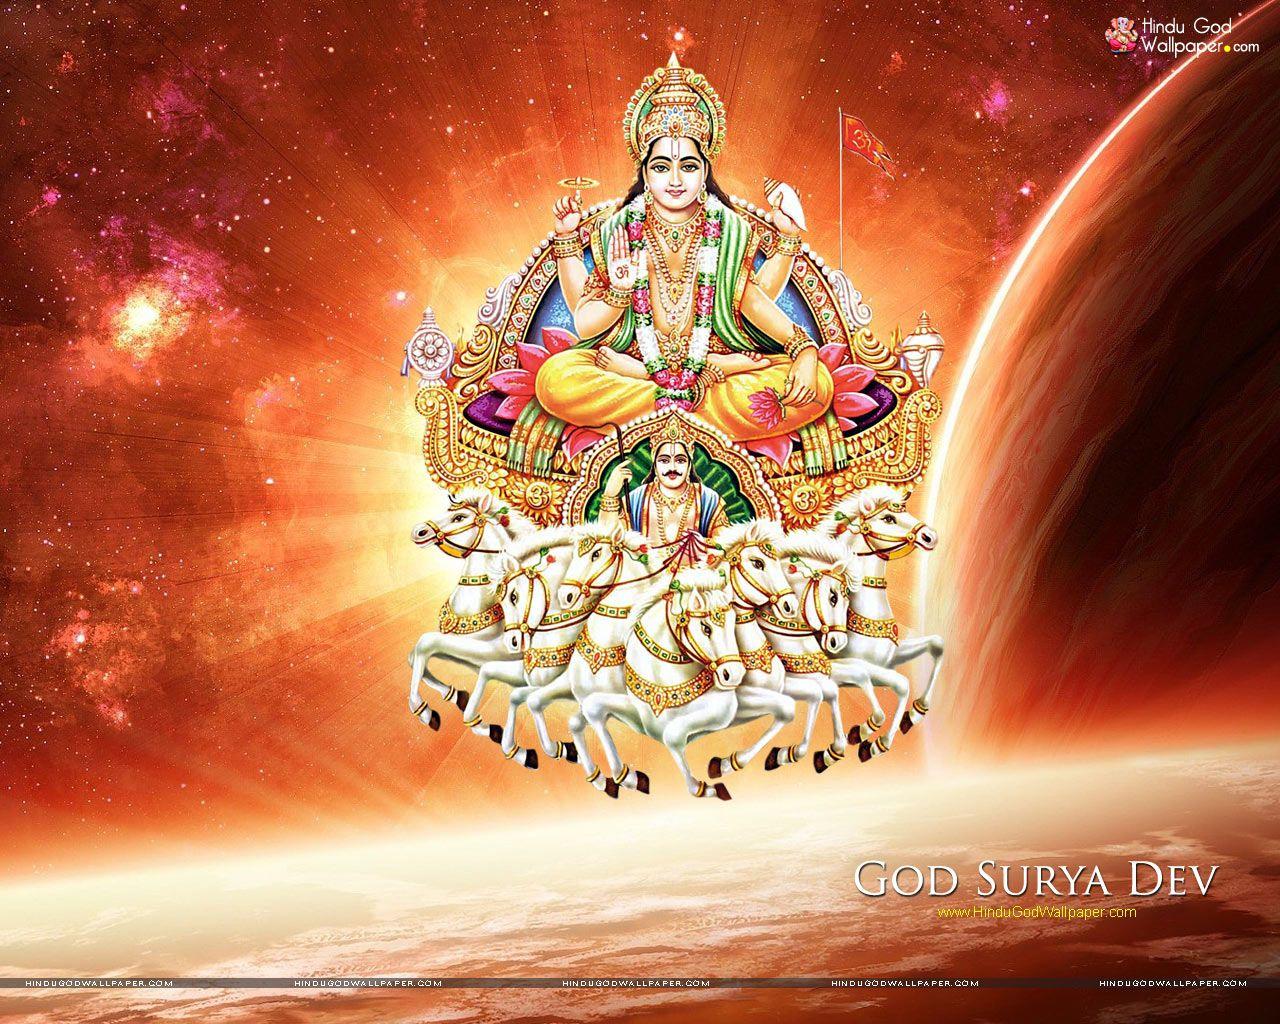 Surya Dev Wallpapers - Top Free Surya Dev Backgrounds ...